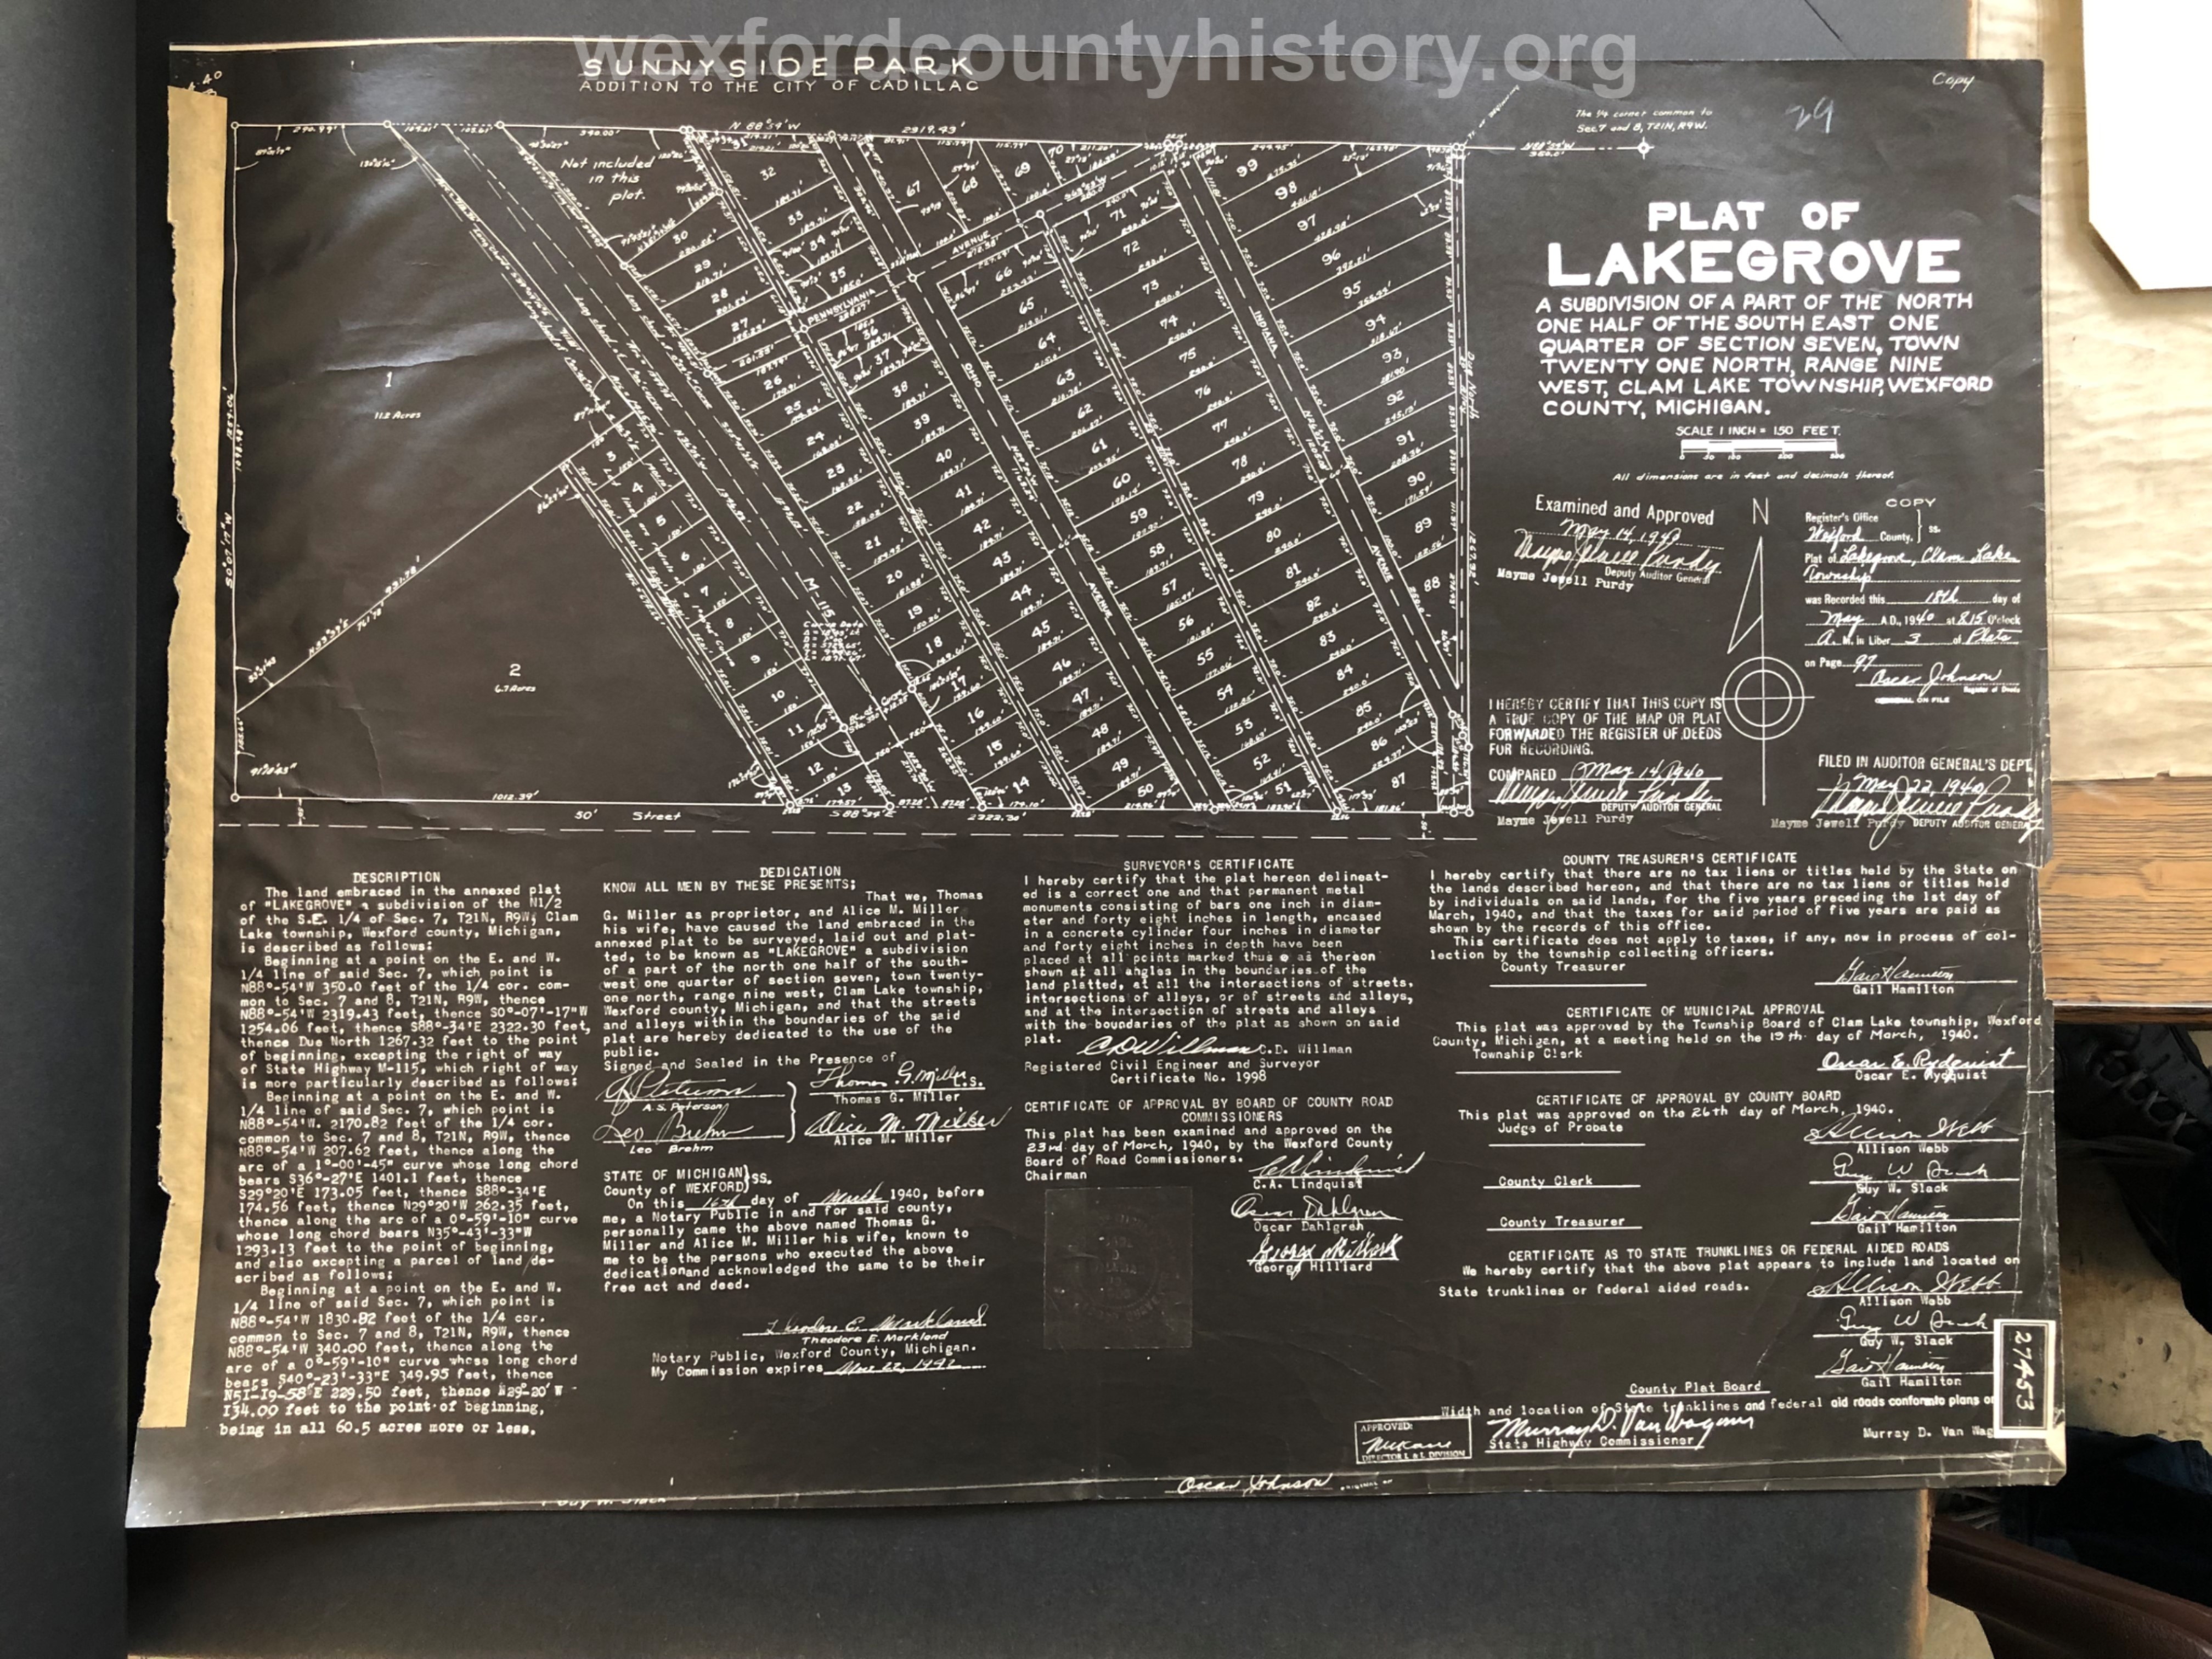 1940 - Lakegrove